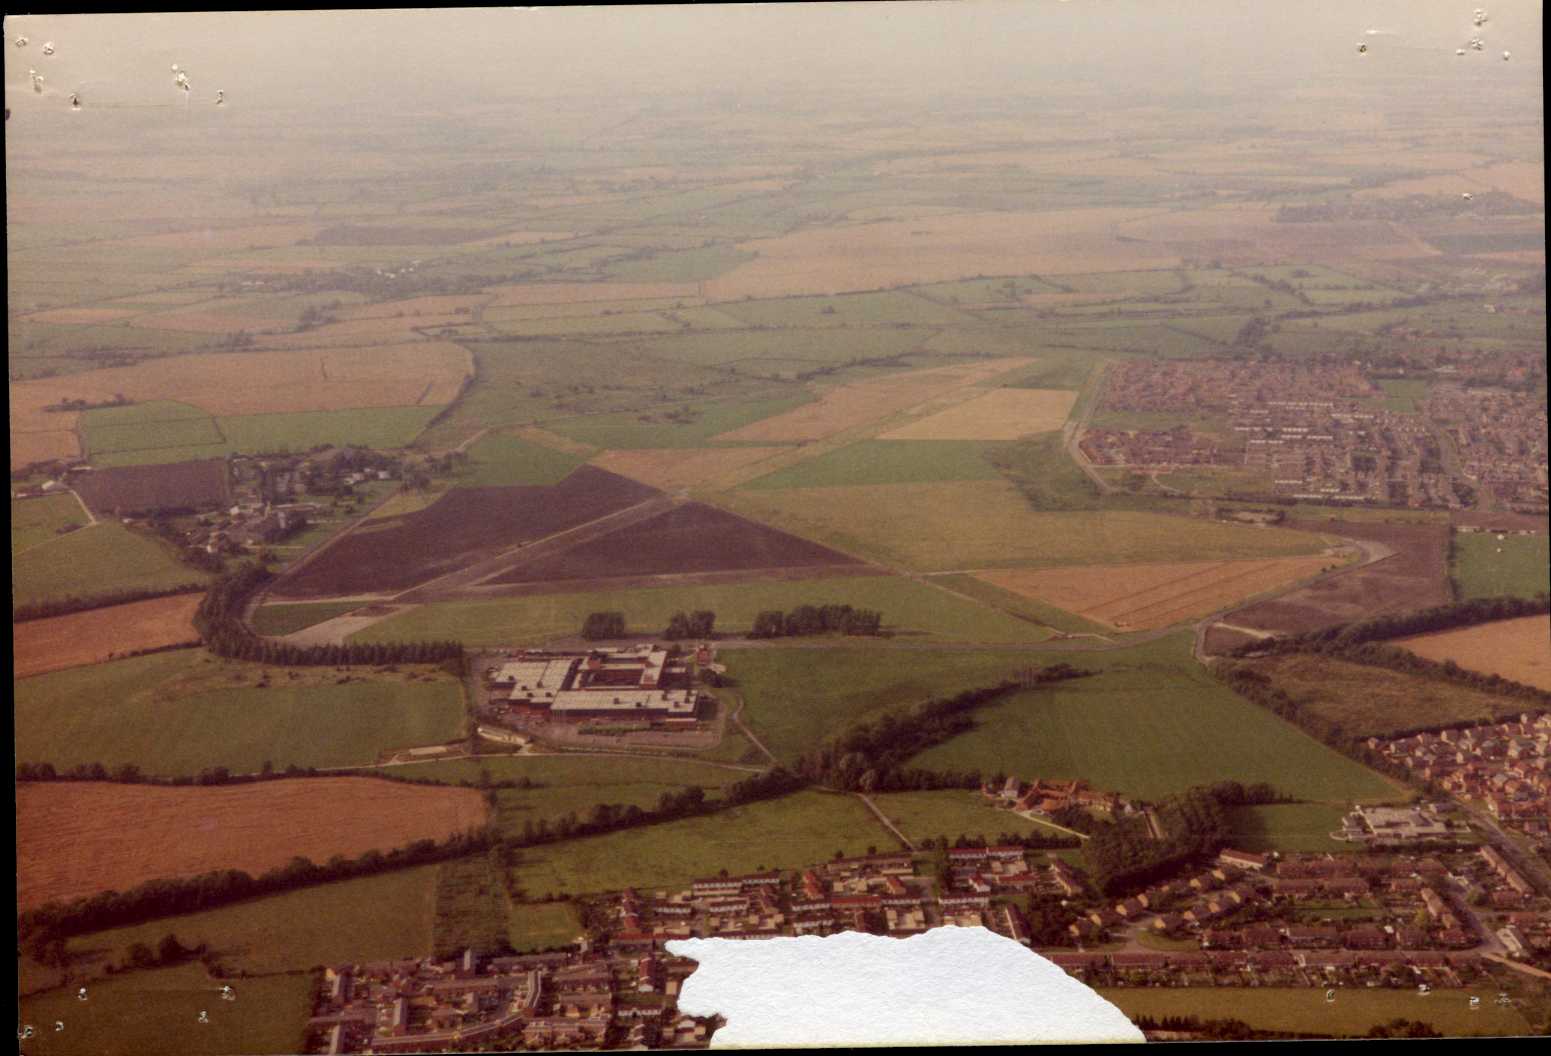 001c. 1982 aerial.jpg